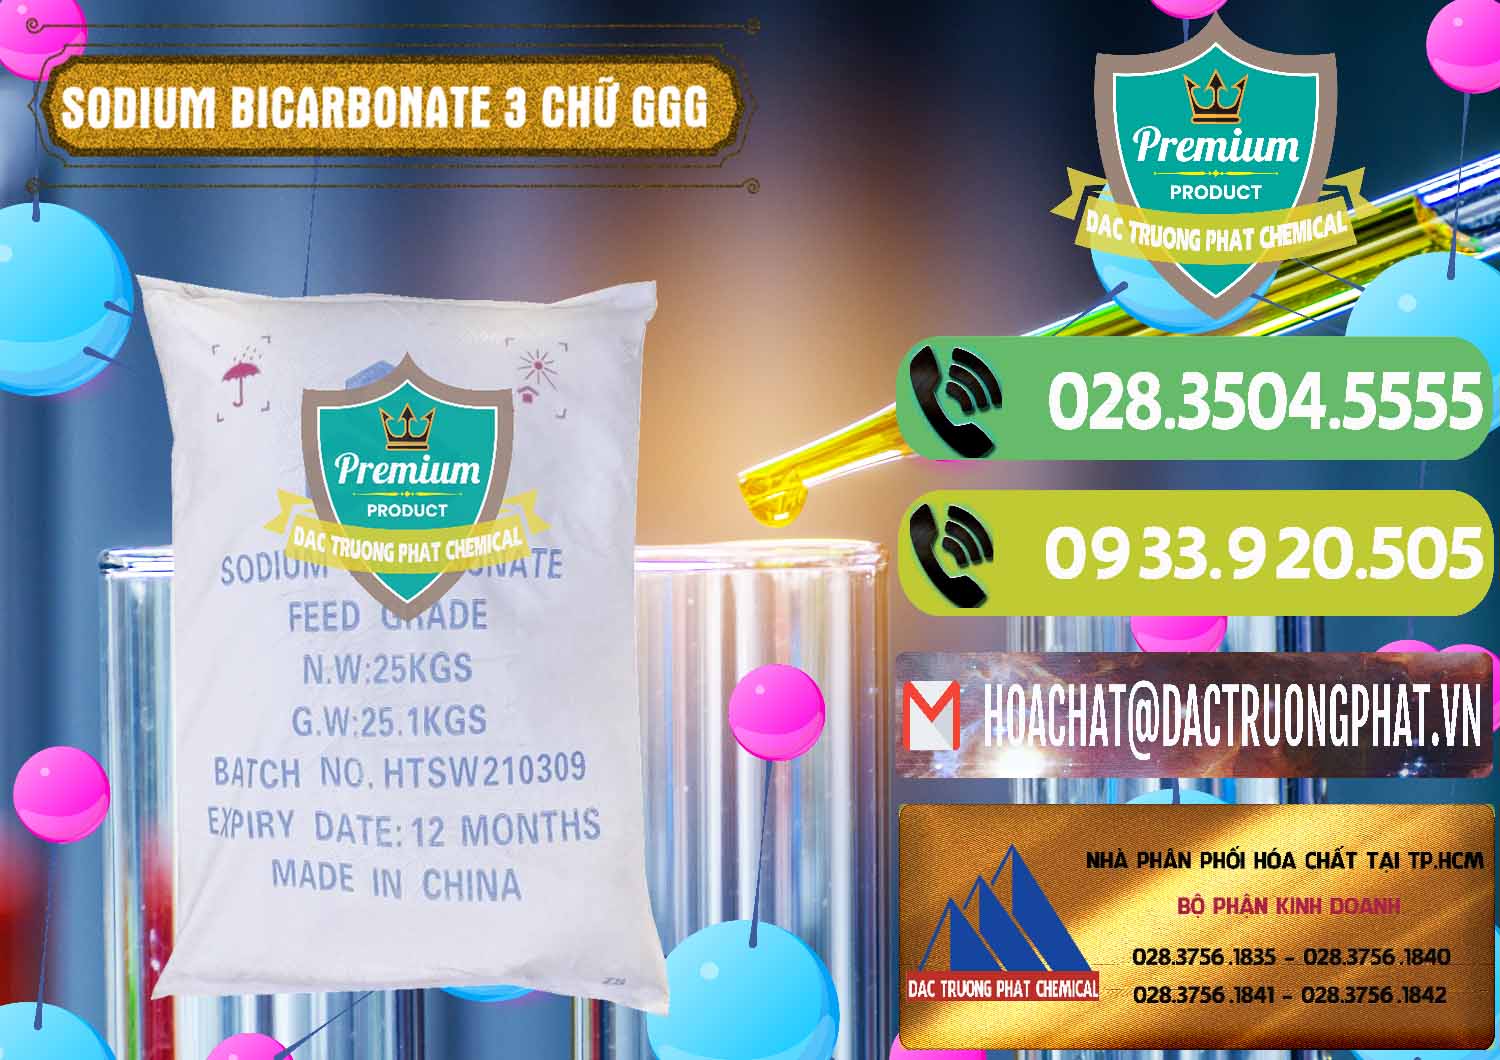 Cty cung cấp & bán Sodium Bicarbonate – Bicar NaHCO3 Food Grade 3 Chữ GGG Trung Quốc China - 0259 - Nơi cung cấp ( phân phối ) hóa chất tại TP.HCM - hoachatmientay.vn